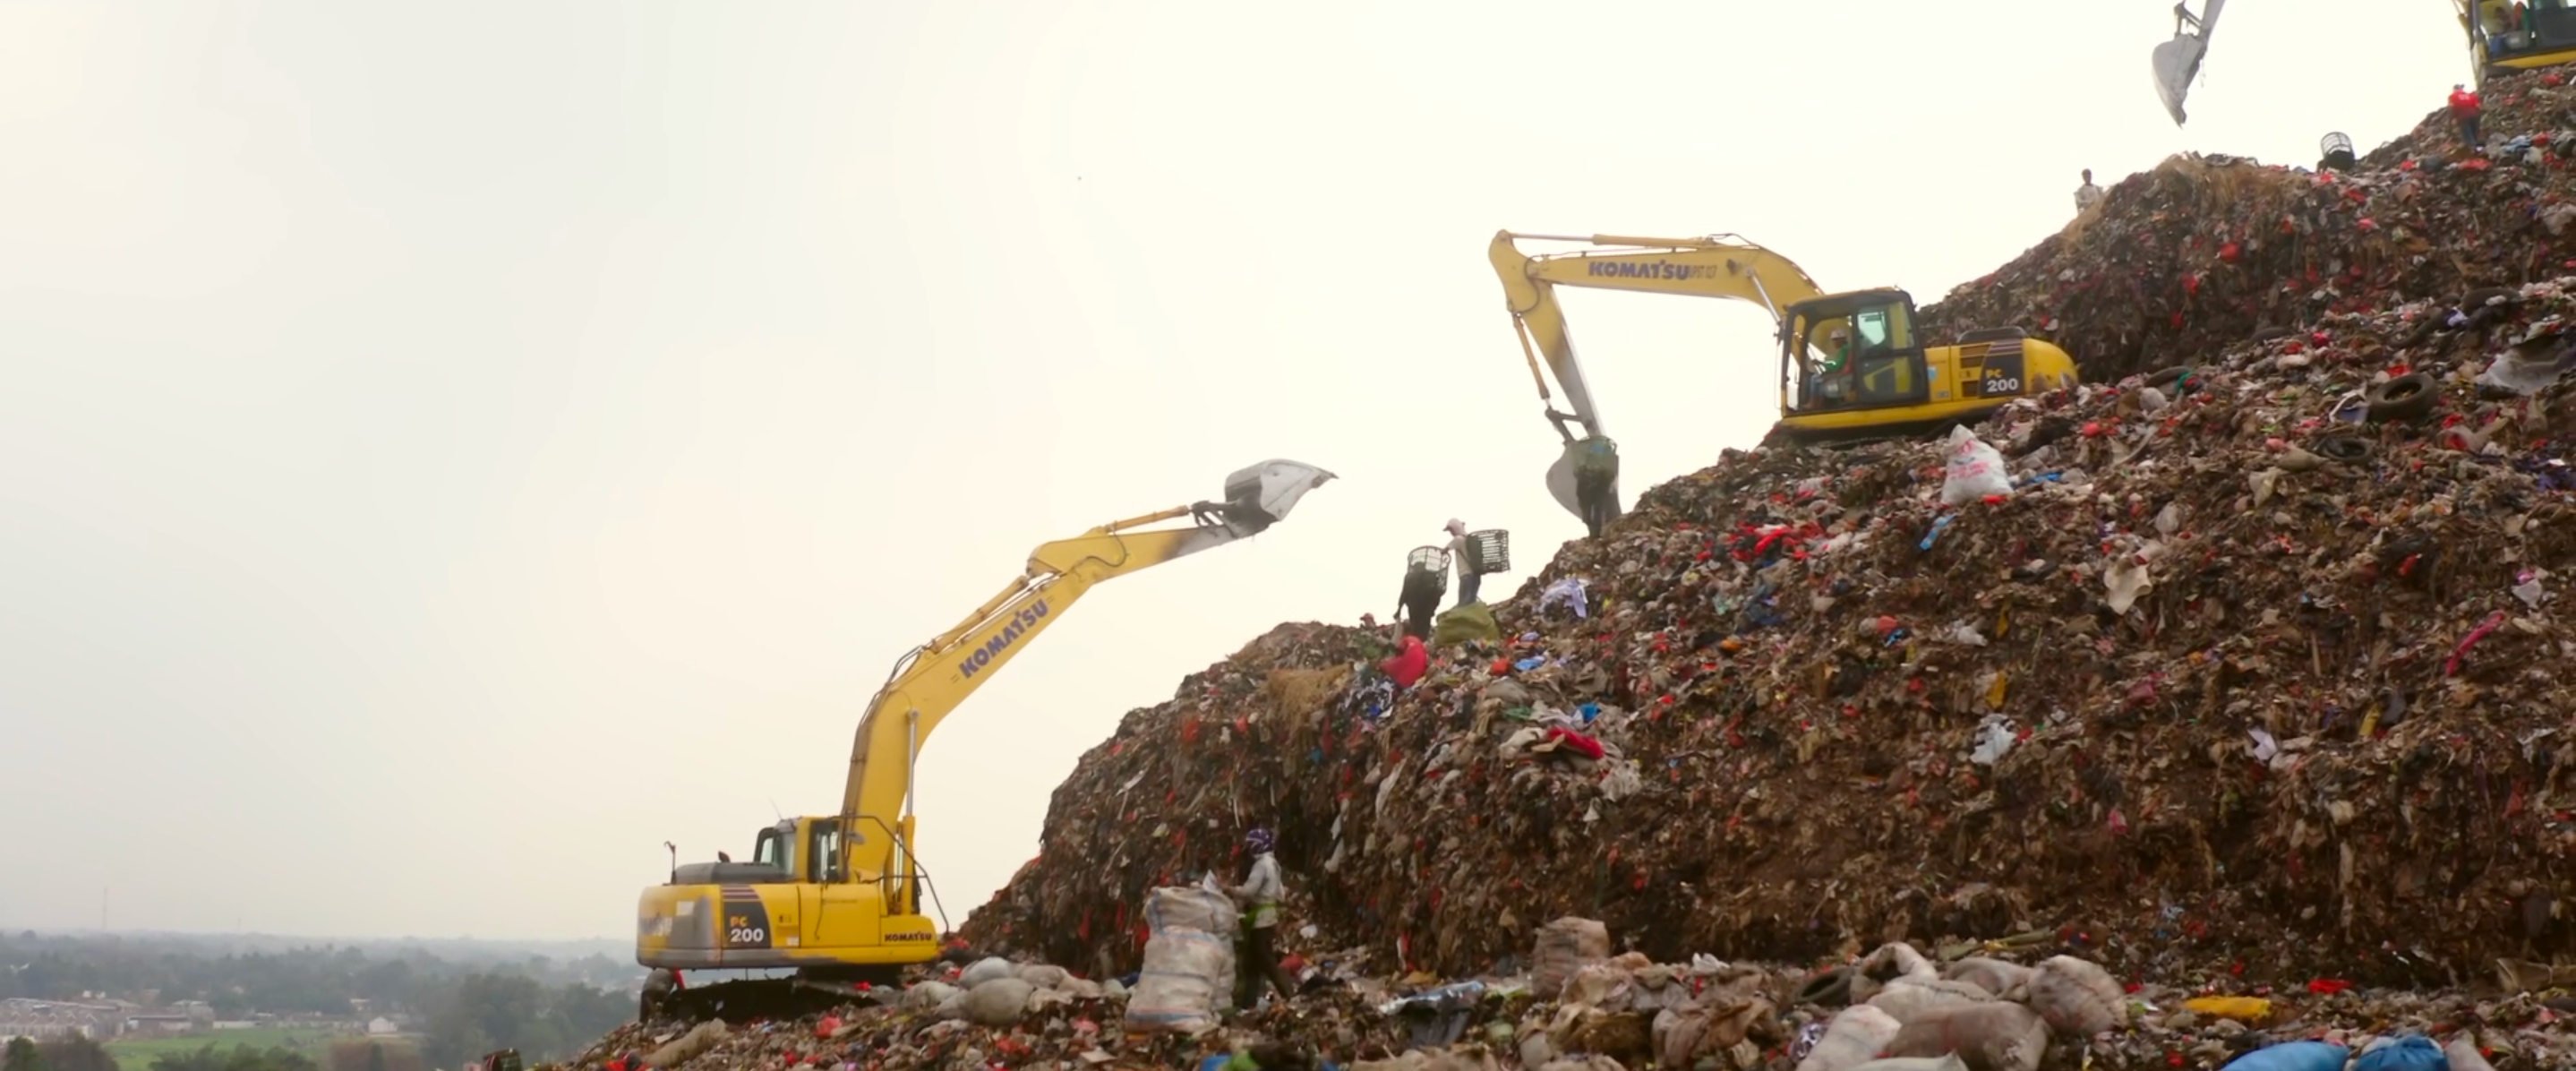 Největší jihoasijská skládka Bantar Gebang nahromadí 6000 tun odpadu každý den, 900 kamionů denně. Foto z filmu <b><i>Větší než my</i></b>